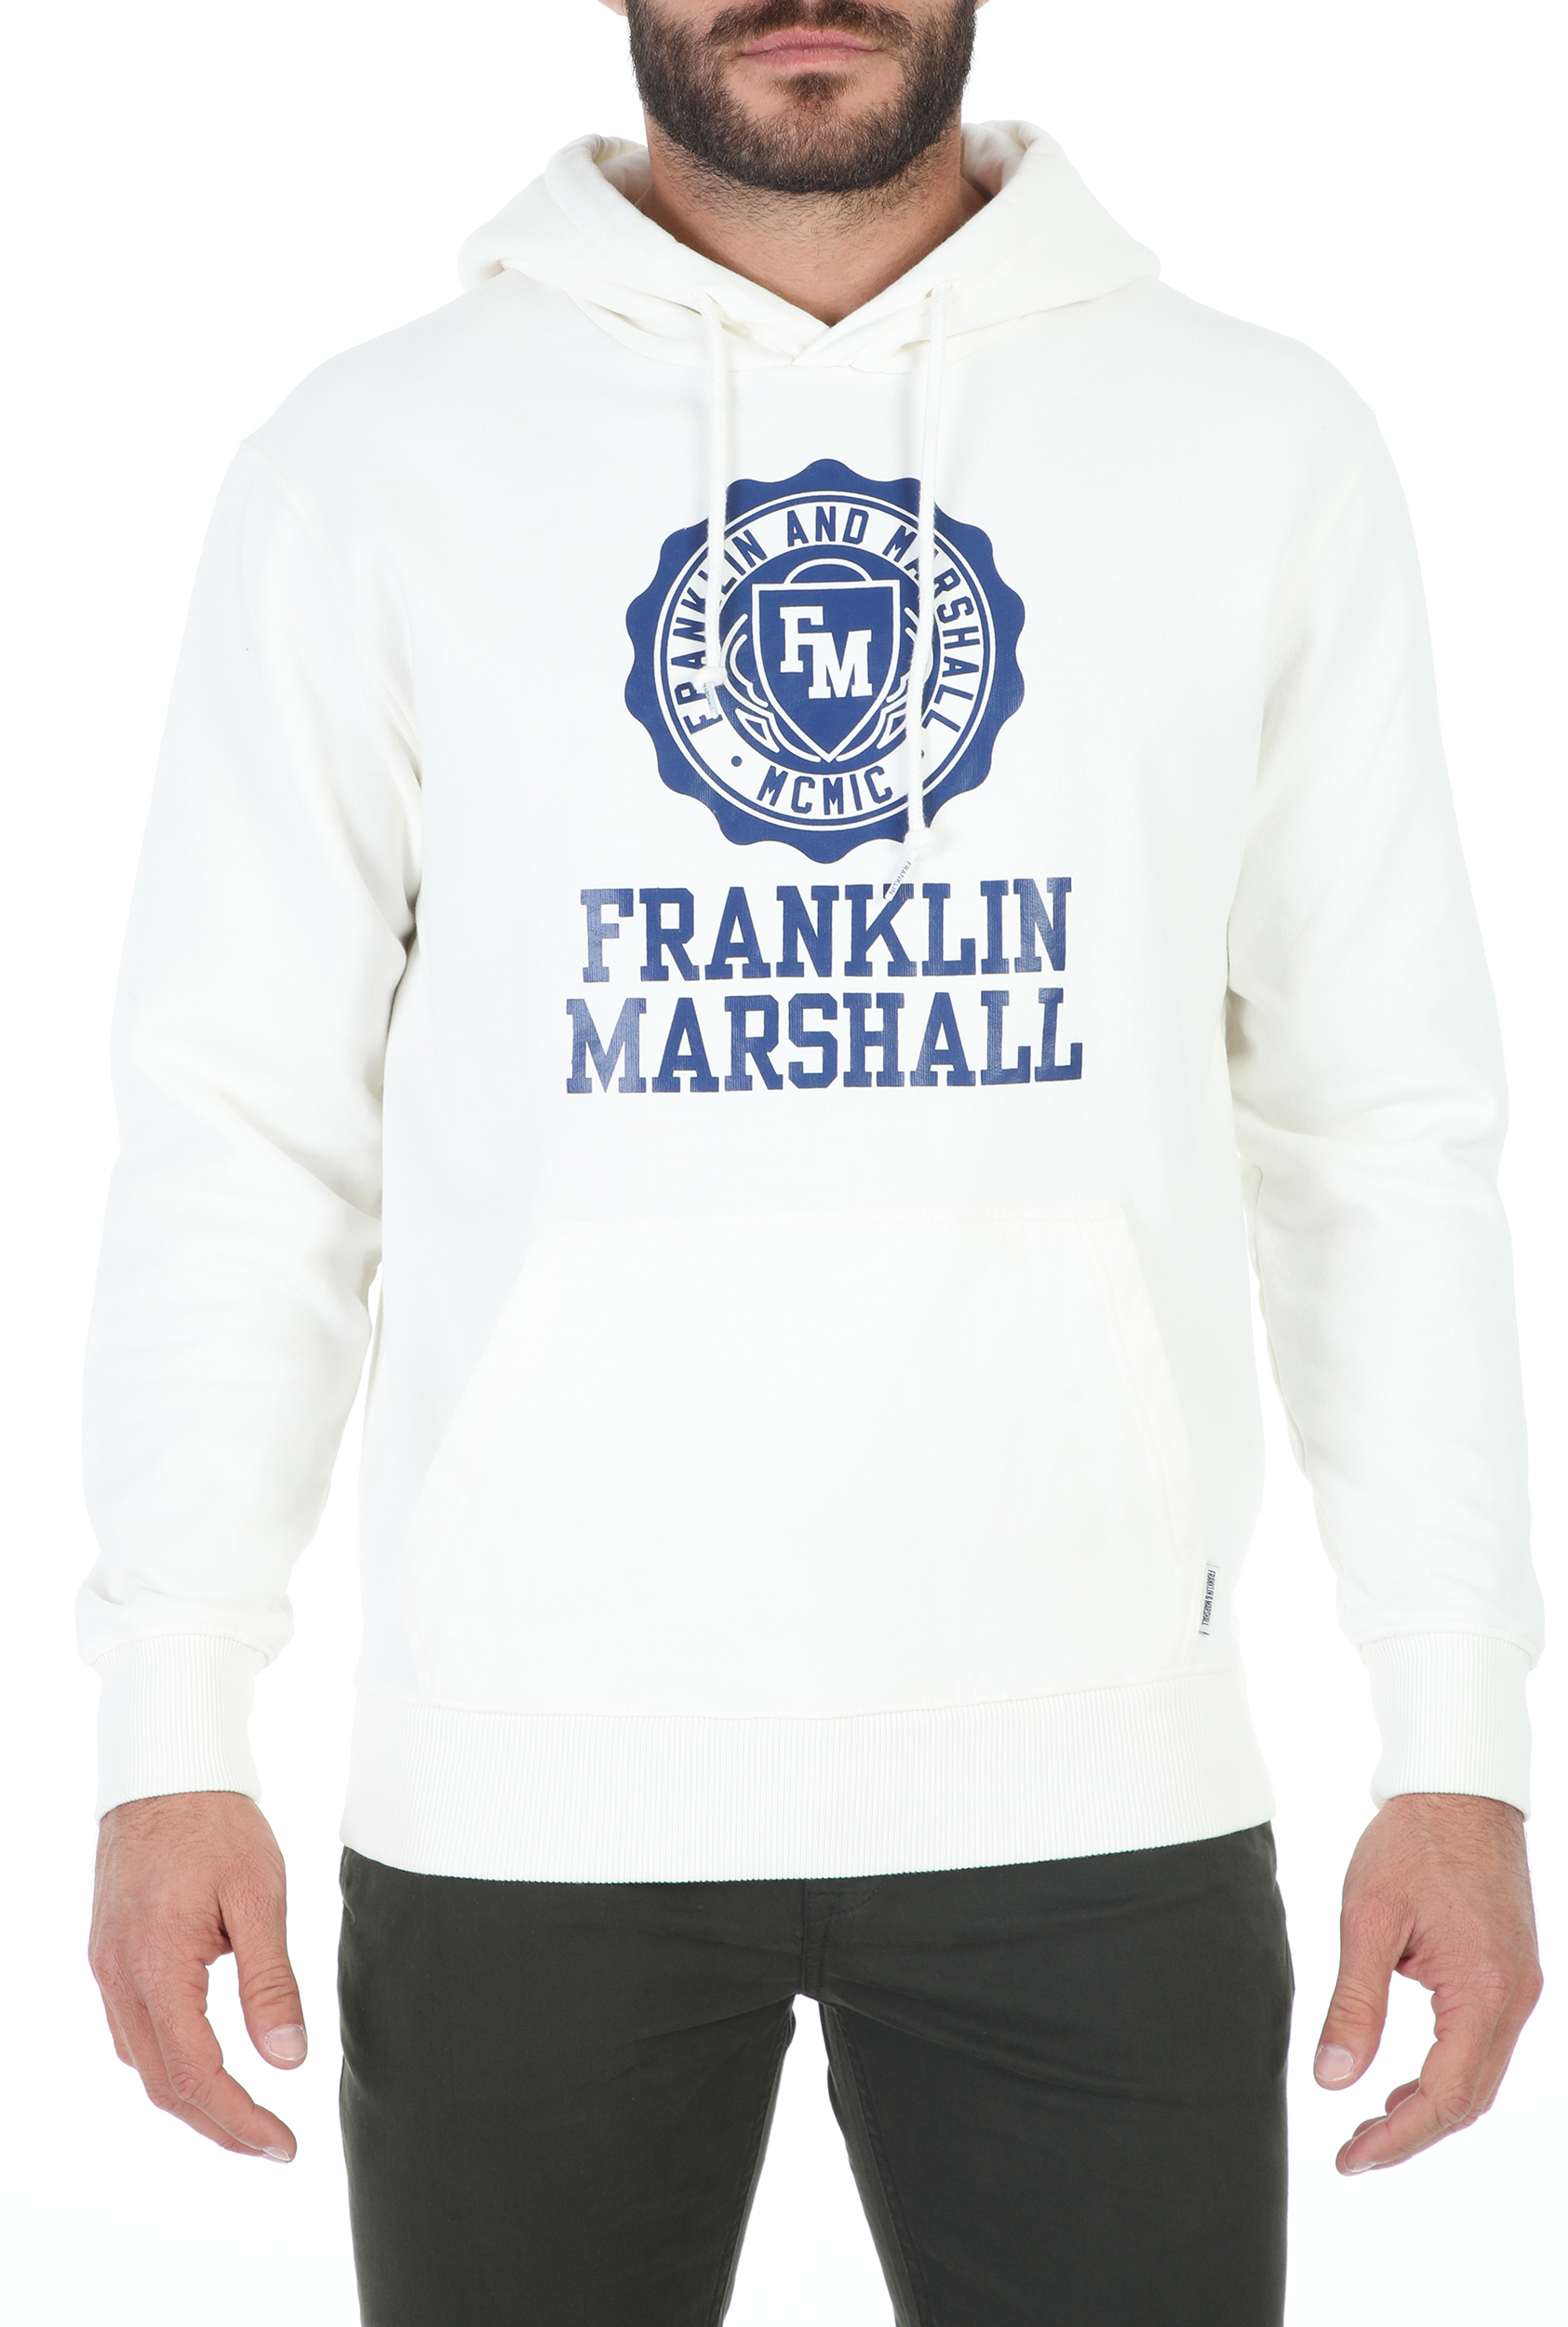 FRANKLIN & MARSHALL – Ανδρική φούτερ μπλούζα FRANKLIN & MARSHALL BRUSHED COTTON FLEE λευκή 1799477.0-0090